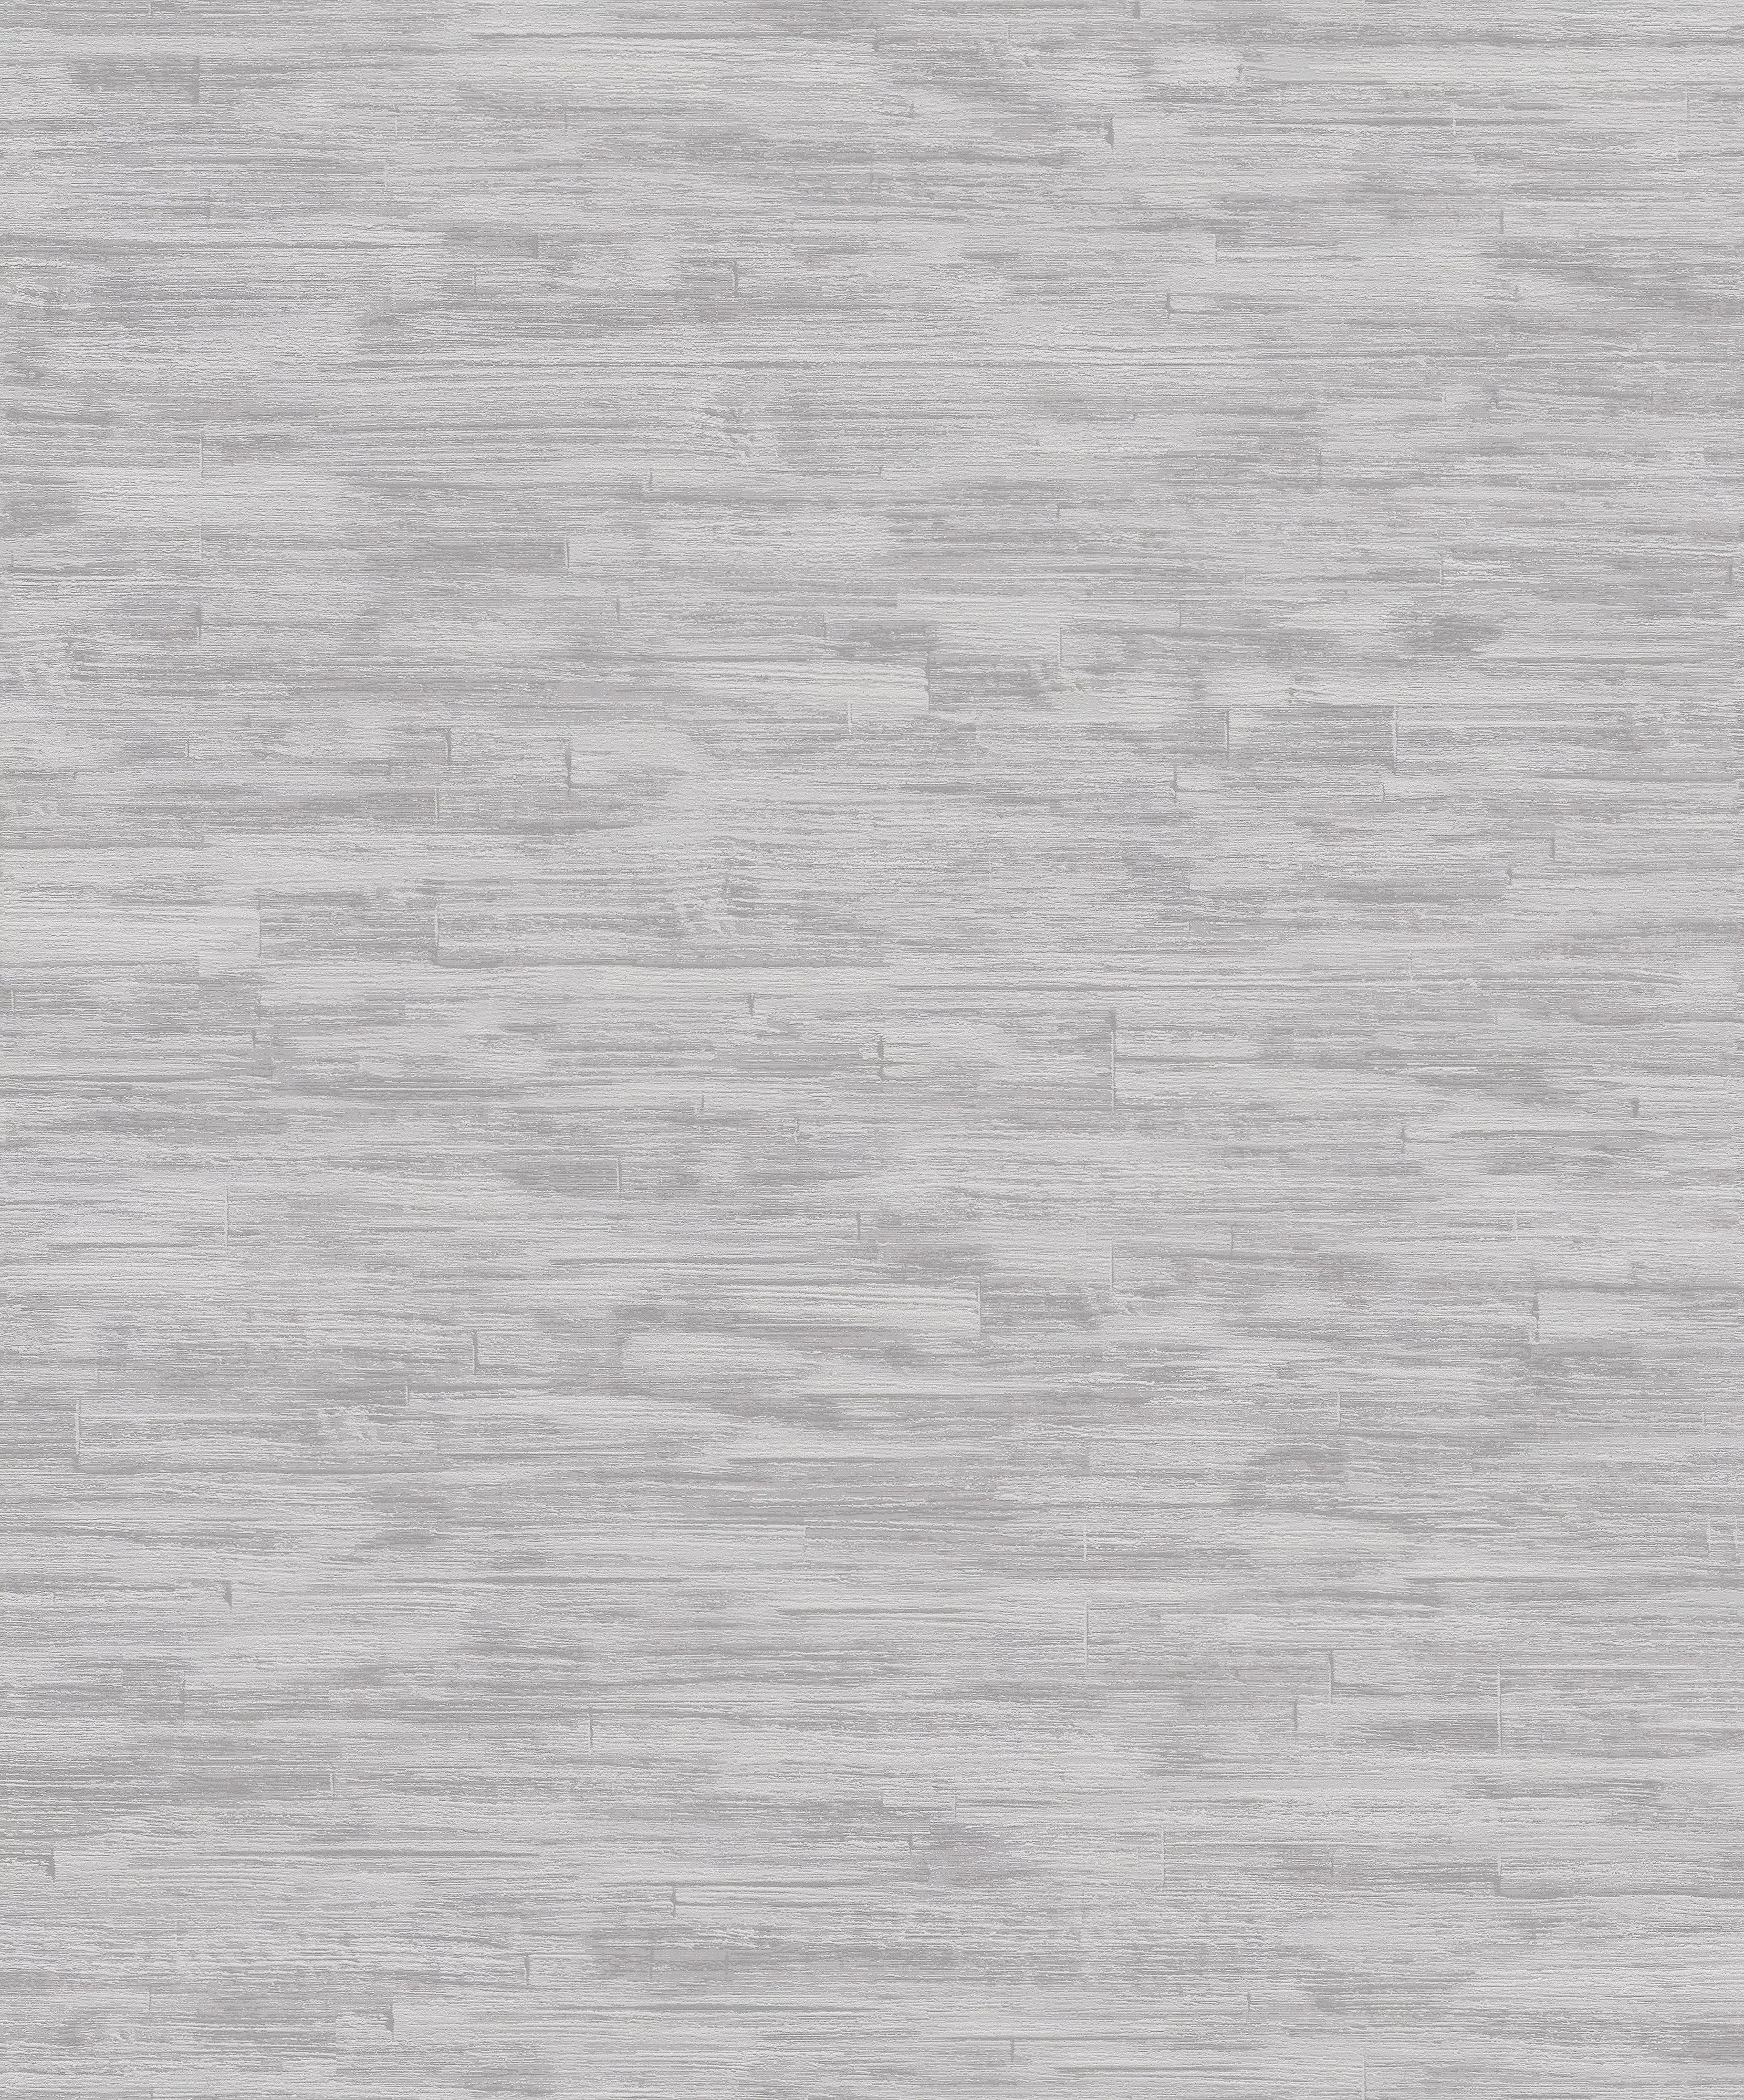 Vlies tapéta szürke ezüst színben struktúrált felülettel